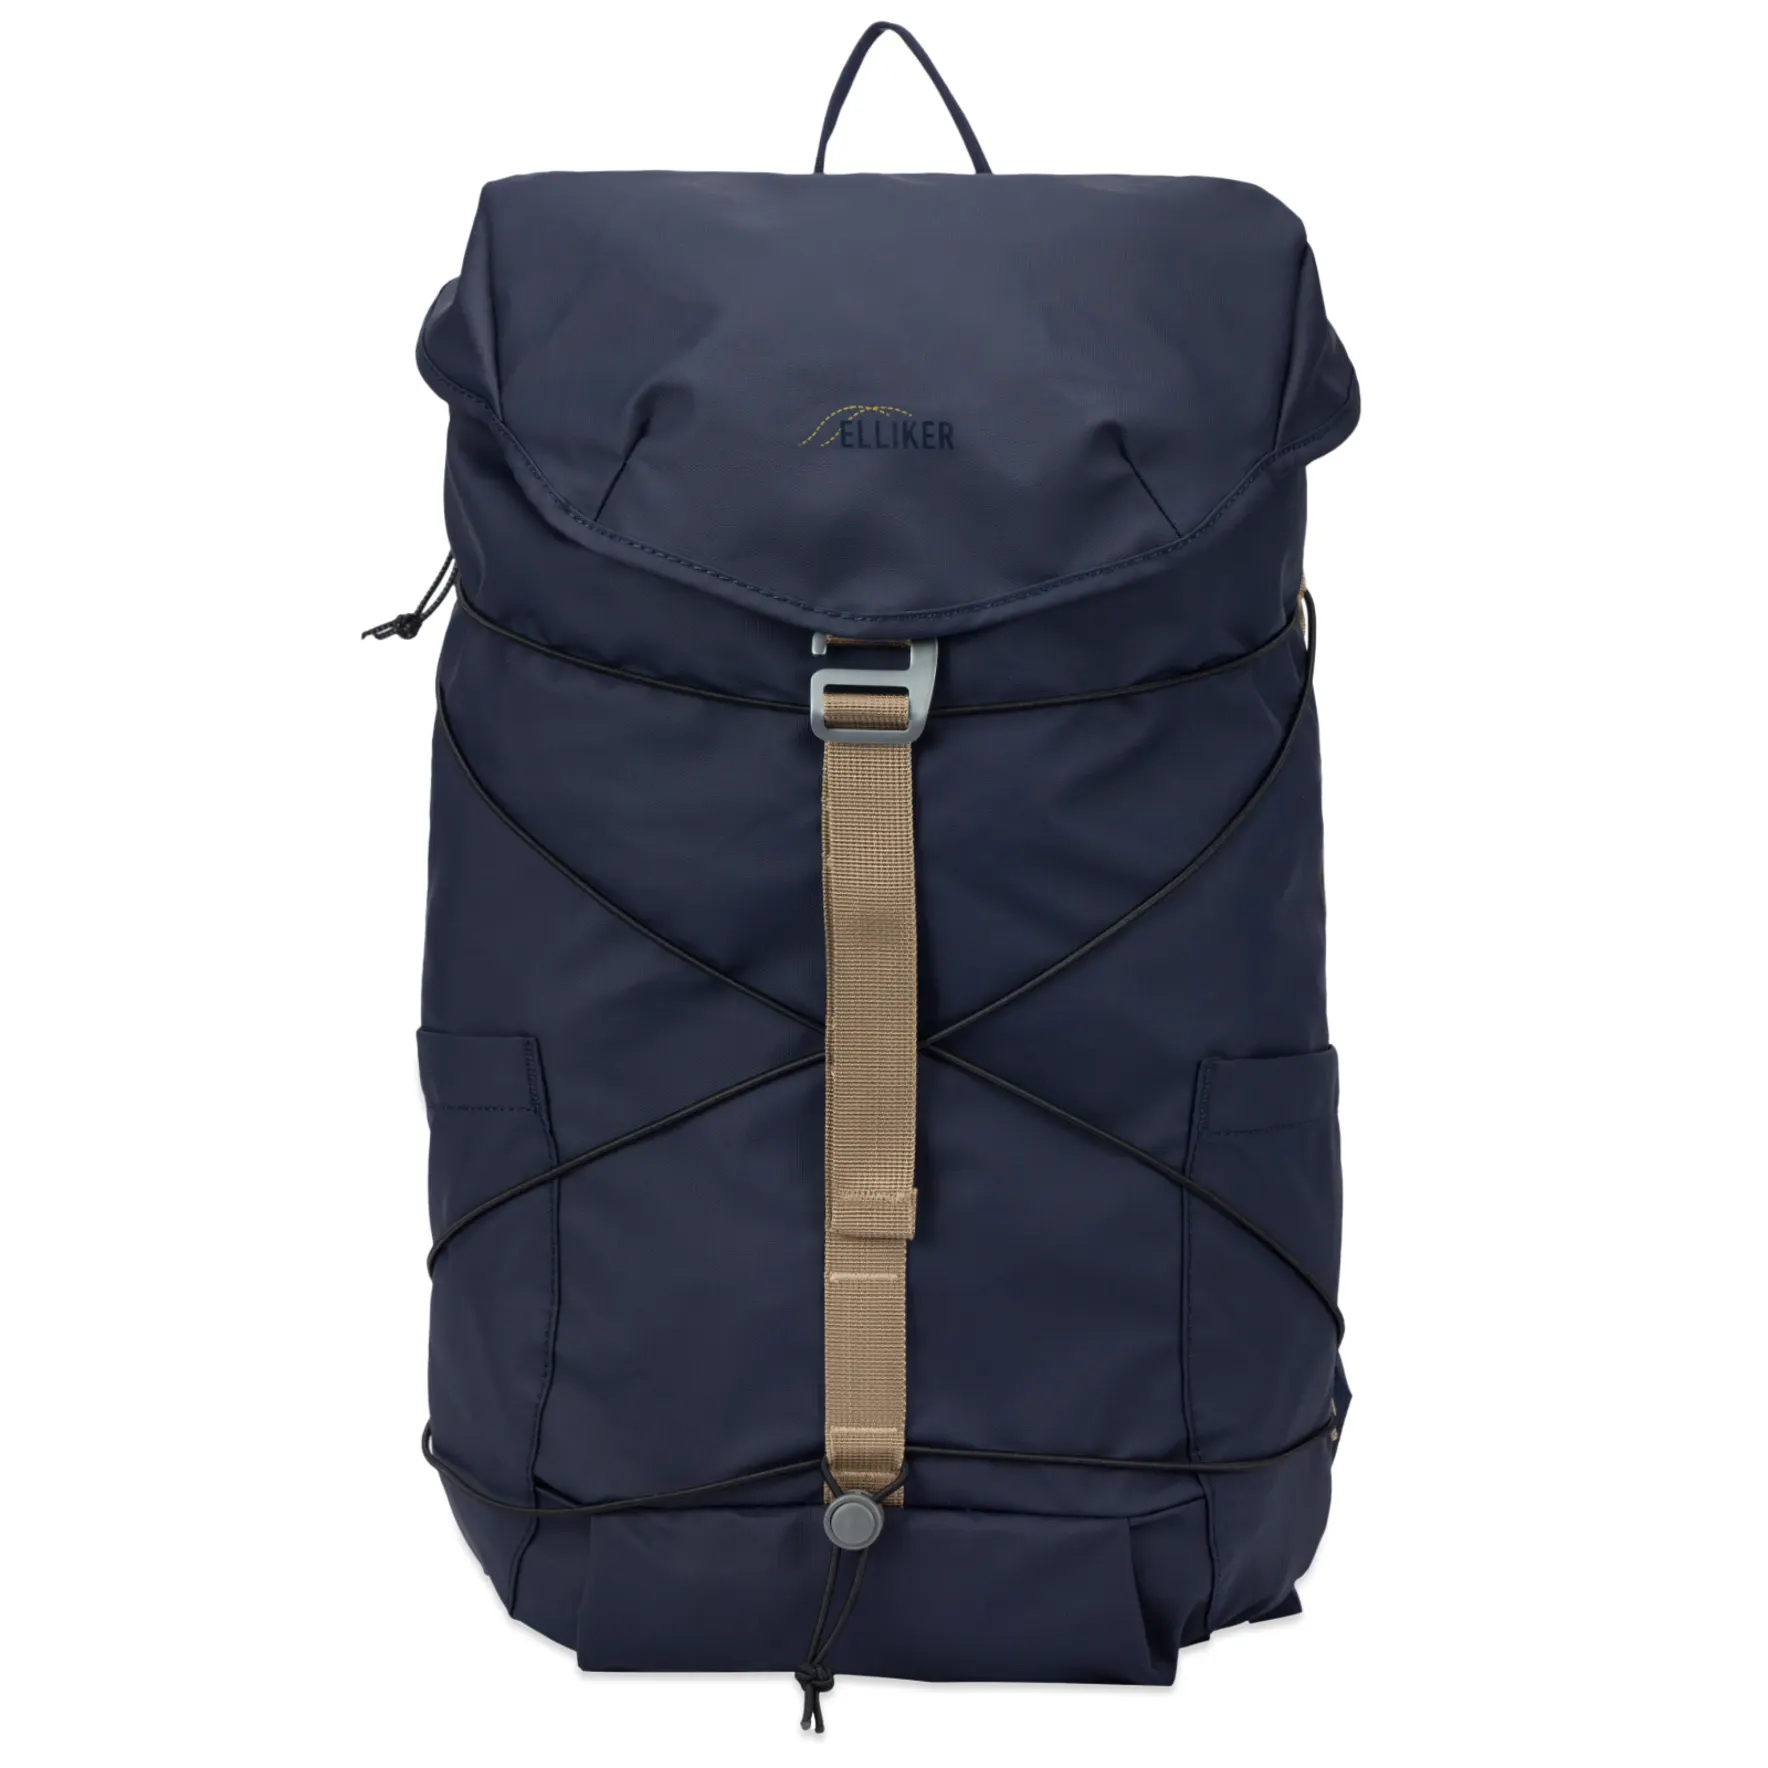 Рюкзак Elliker Wharfe Flapover Backpack, темно-синий рюкзак elliker dayle black